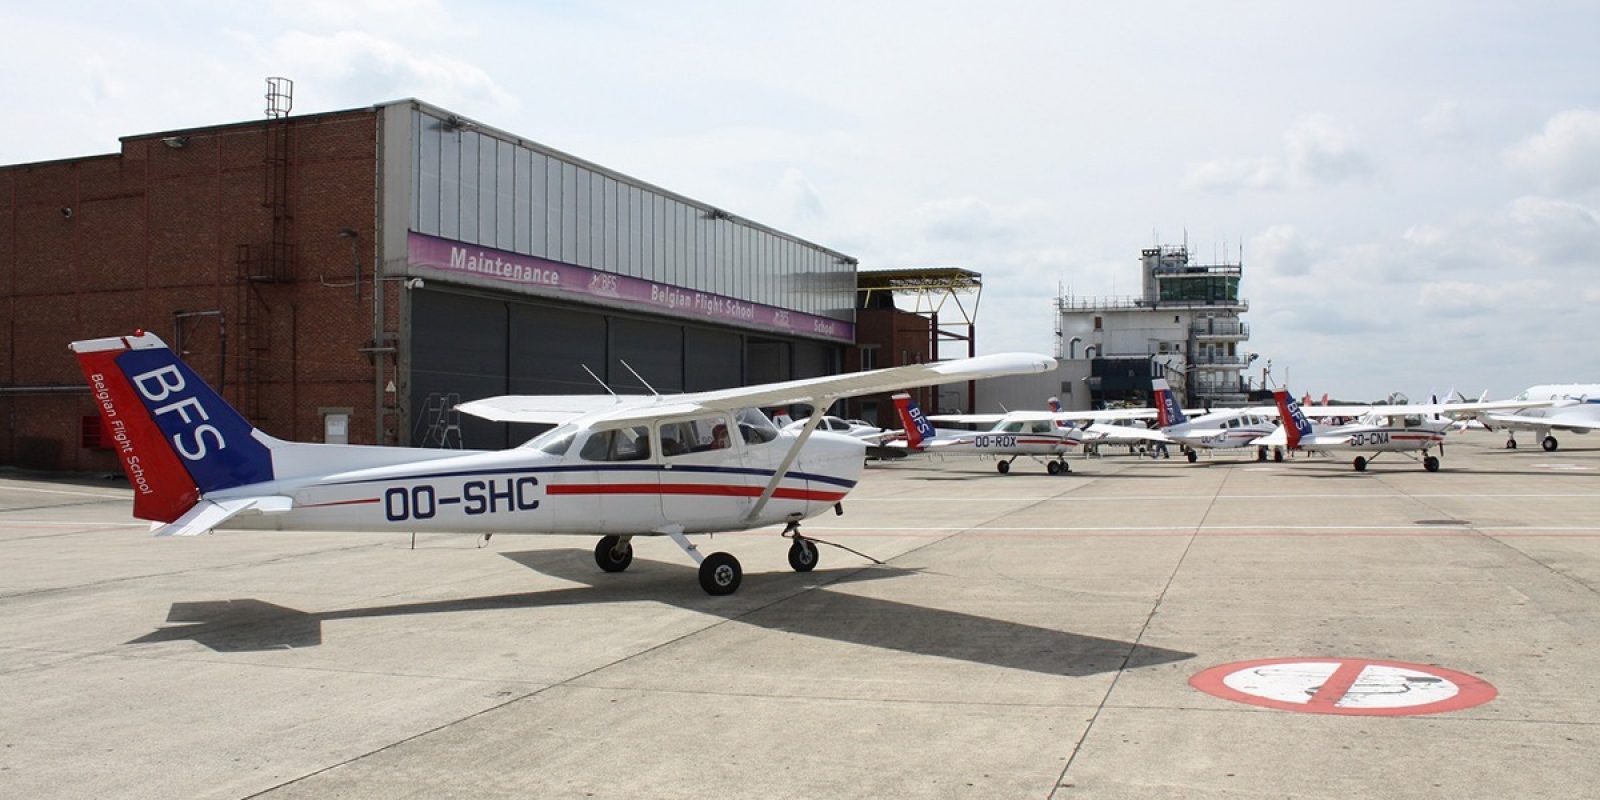 Le OO-SHC est un des Cessna 172 de la flotte BFS, photographié en avant-plan d’une partie de la flotte des « Blue tails ».